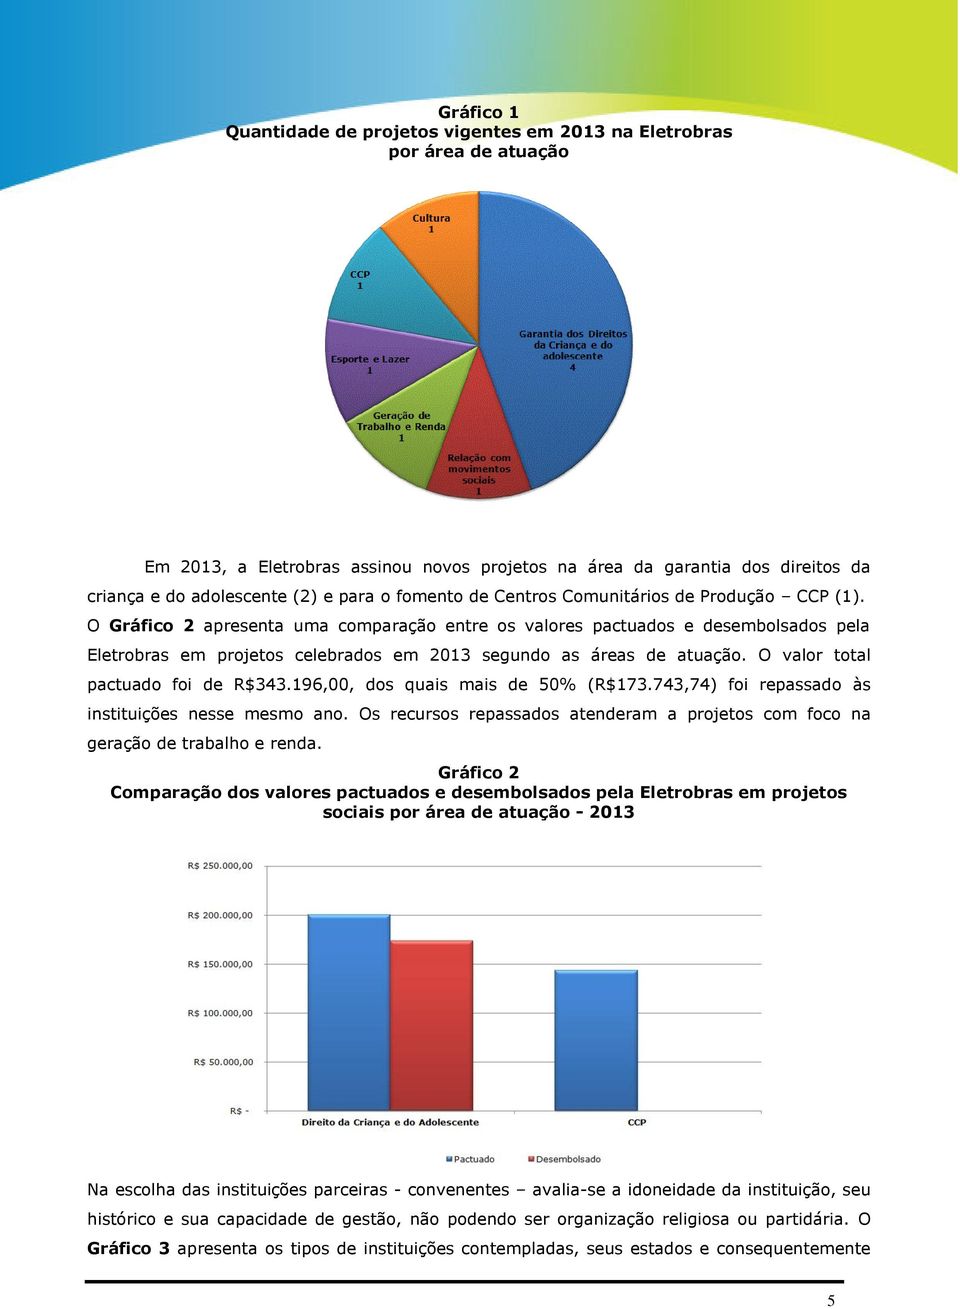 O Gráfico 2 apresenta uma comparação entre os valores pactuados e desembolsados pela Eletrobras em projetos celebrados em 2013 segundo as áreas de atuação. O valor total pactuado foi de R$343.